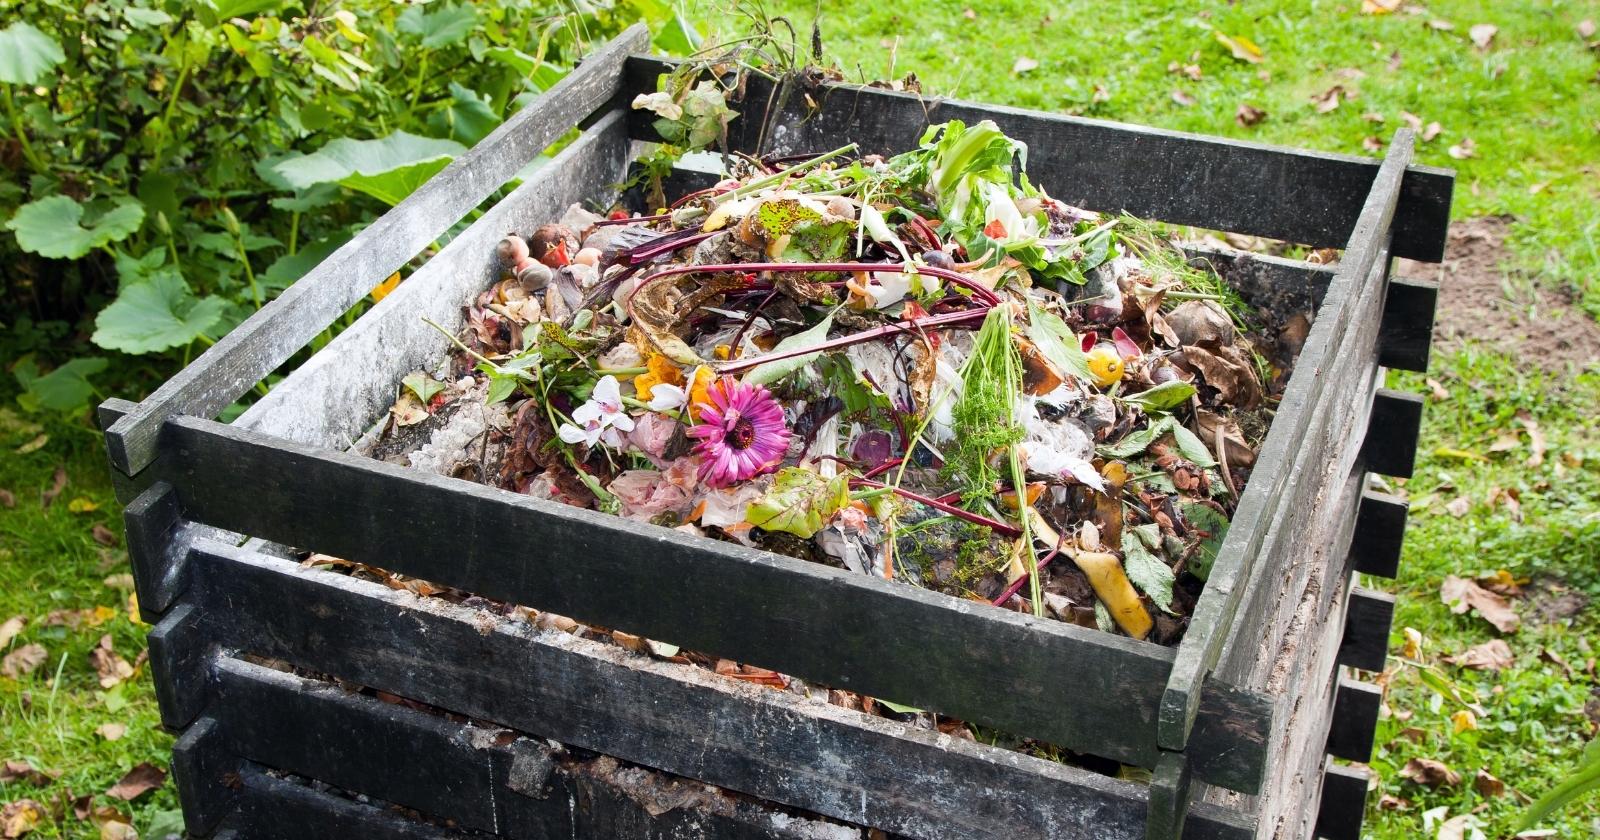 Una imagen de una pila de compost almacenada en un contenedor de madera.  Hay muchos tipos diferentes de plantas incluidas en el material de compost.  Puedes ver frutas, cáscaras de plátano, verduras y flores rosadas en el contenedor de madera que contiene el compost dentro.